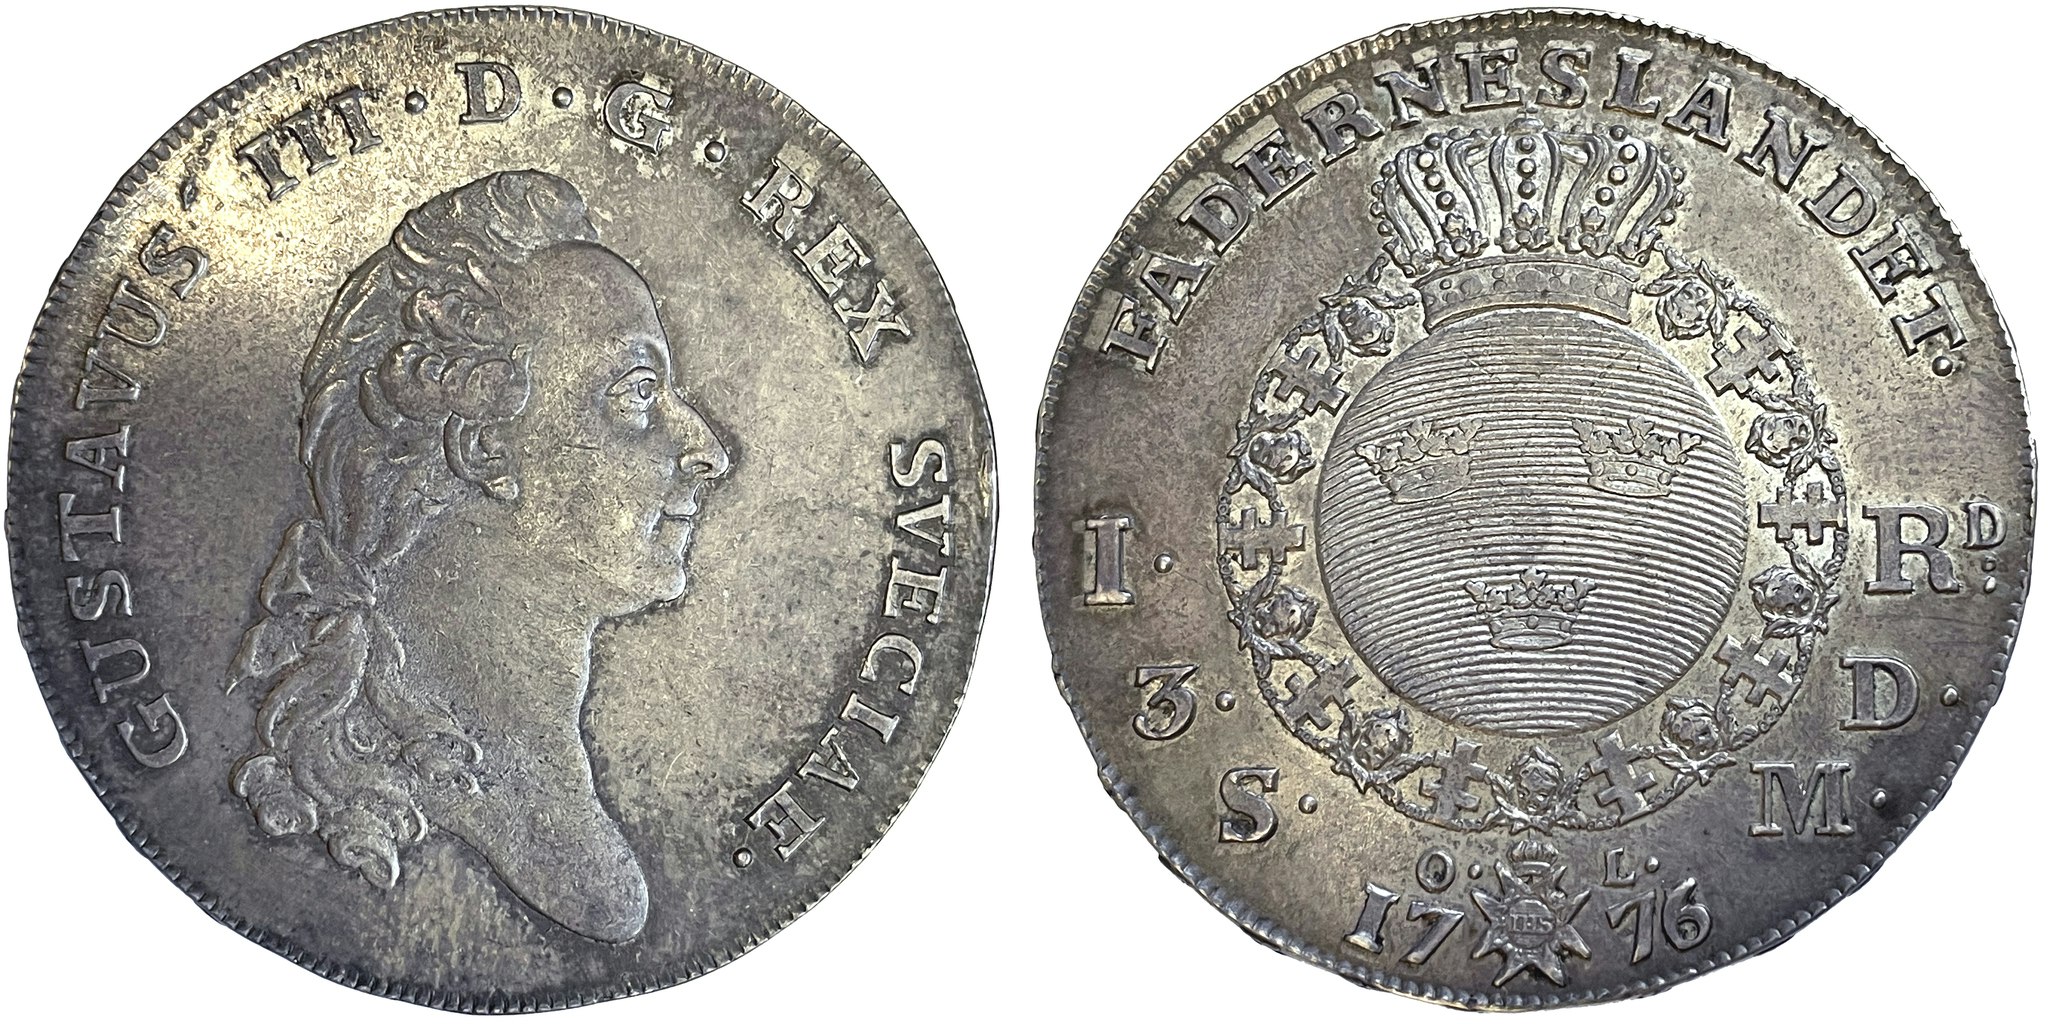 Gustav III - Riksdaler 1776 på 5 - Vackert exemplar